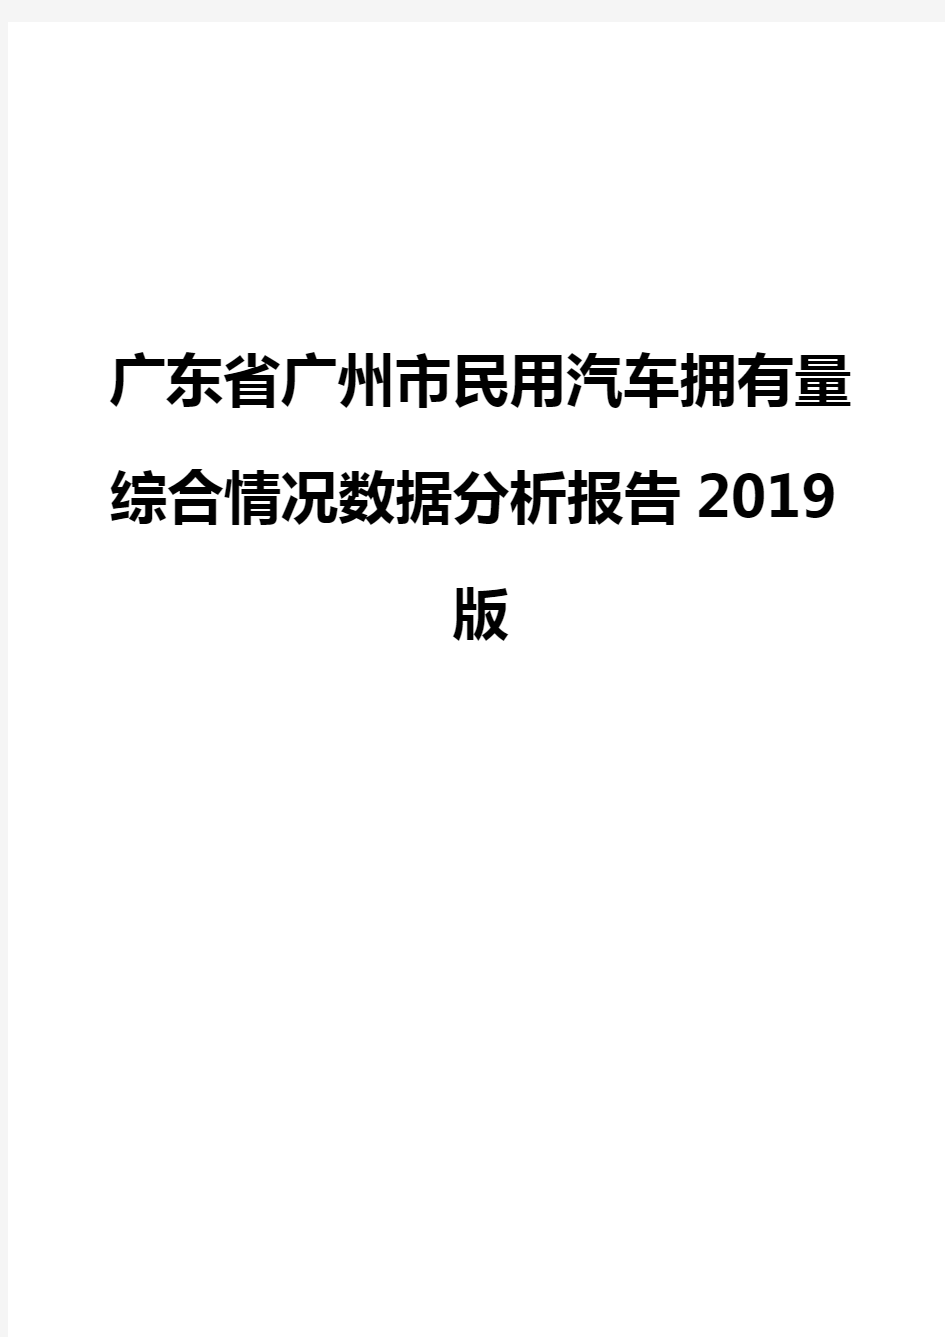 广东省广州市民用汽车拥有量综合情况数据分析报告2019版